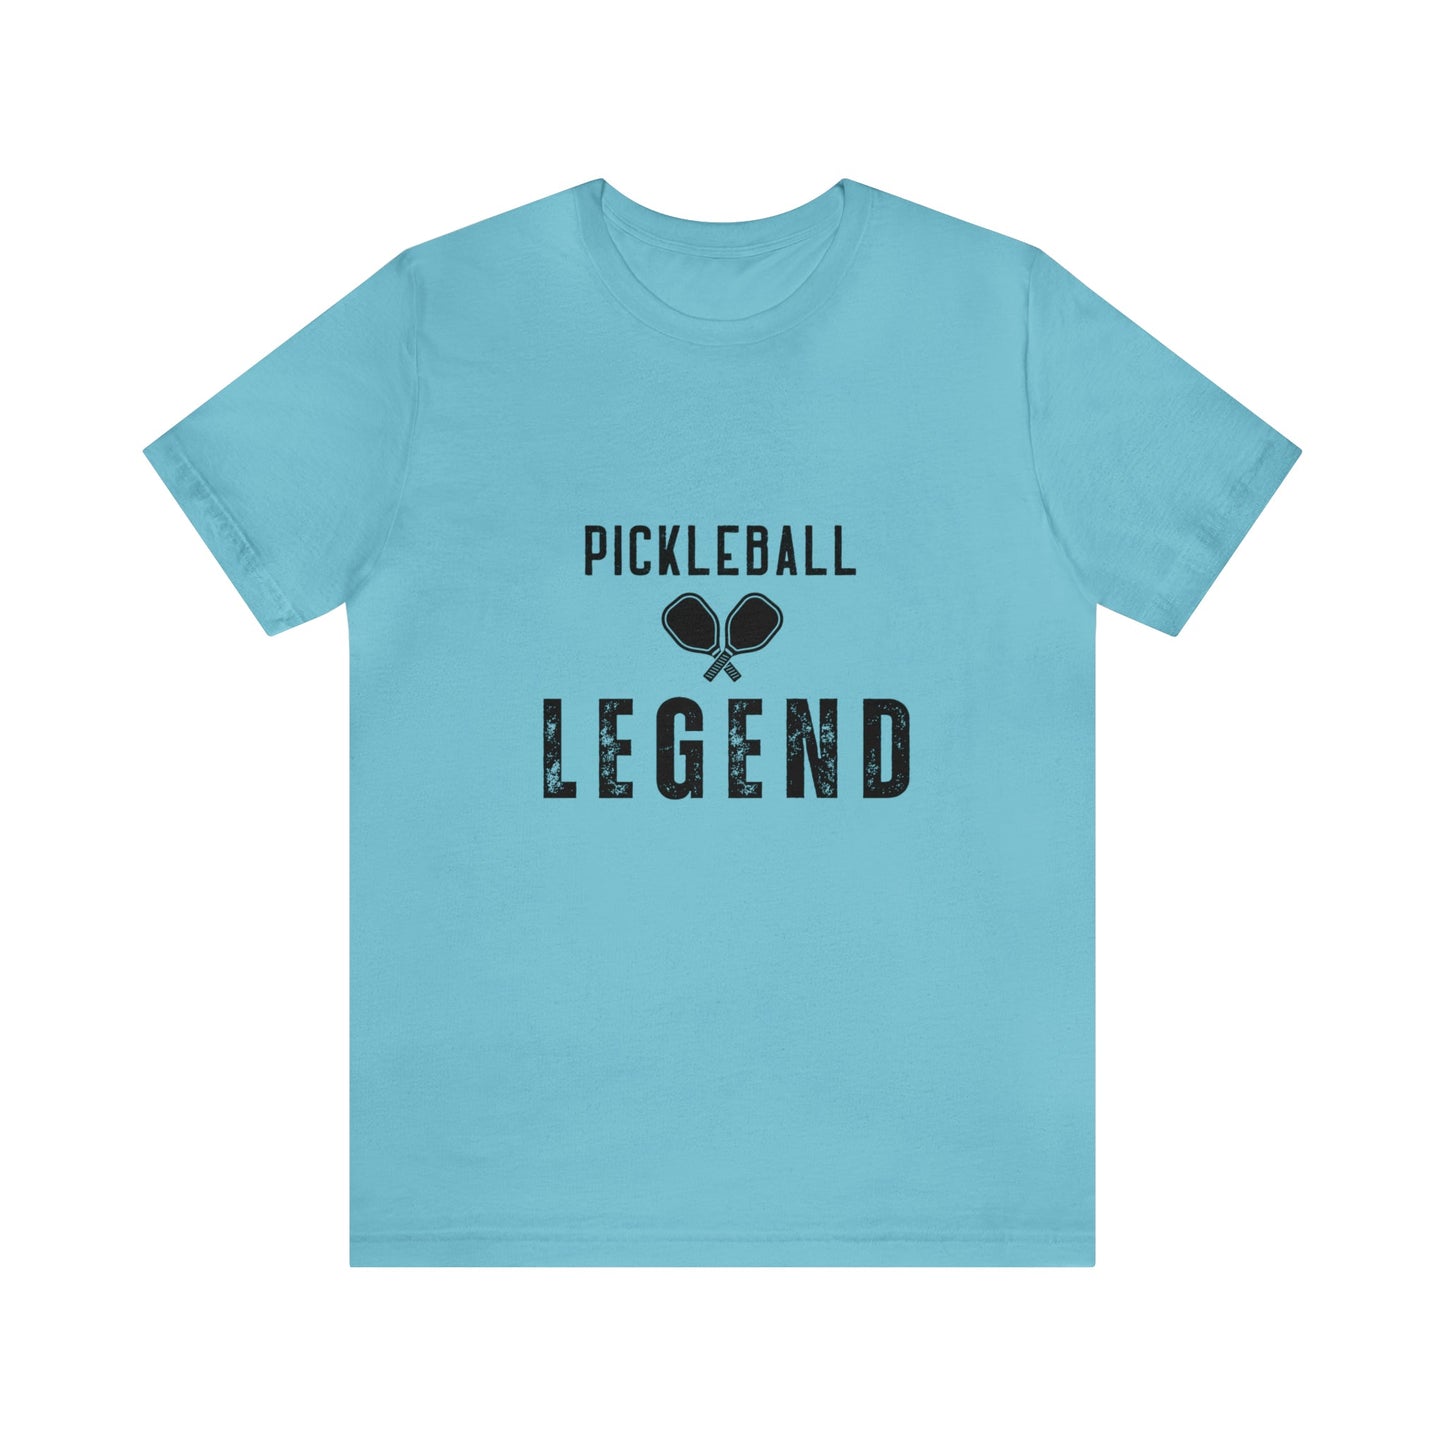 'Pickleball Legend' T-Shirt